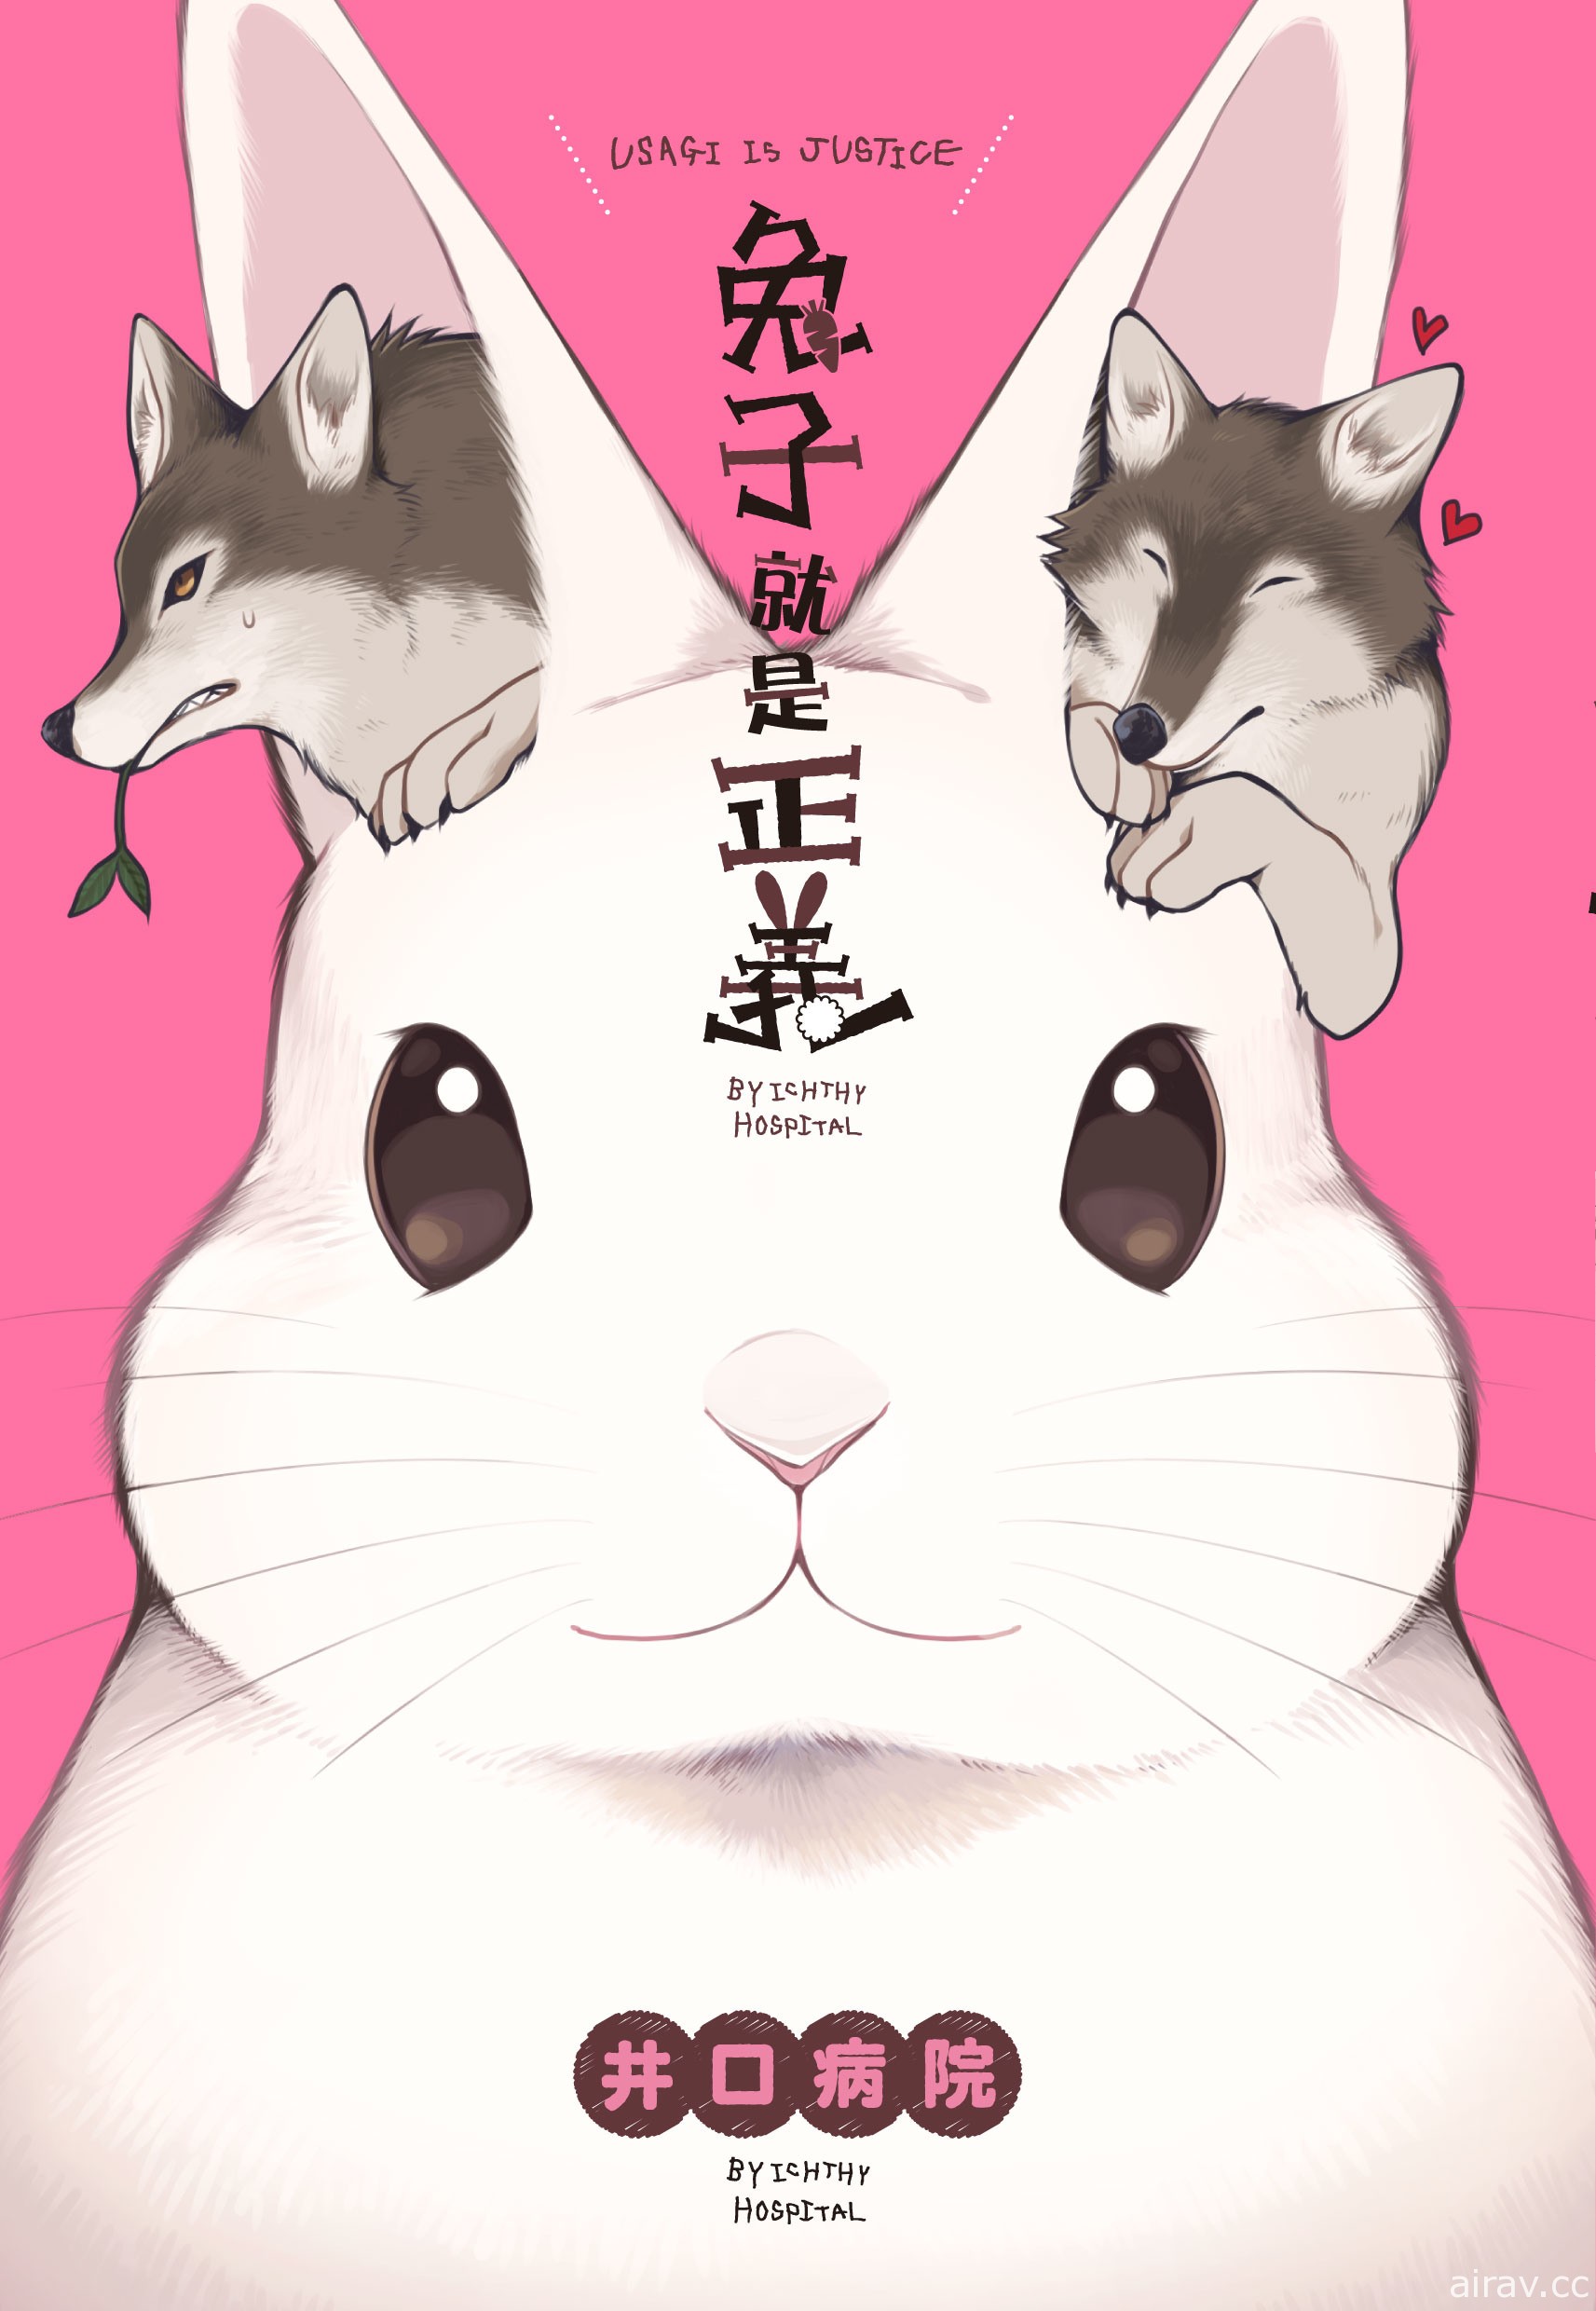 【书讯】尖端 11 月漫画、轻小说新书《兔子就是正义》《忍物语》等作